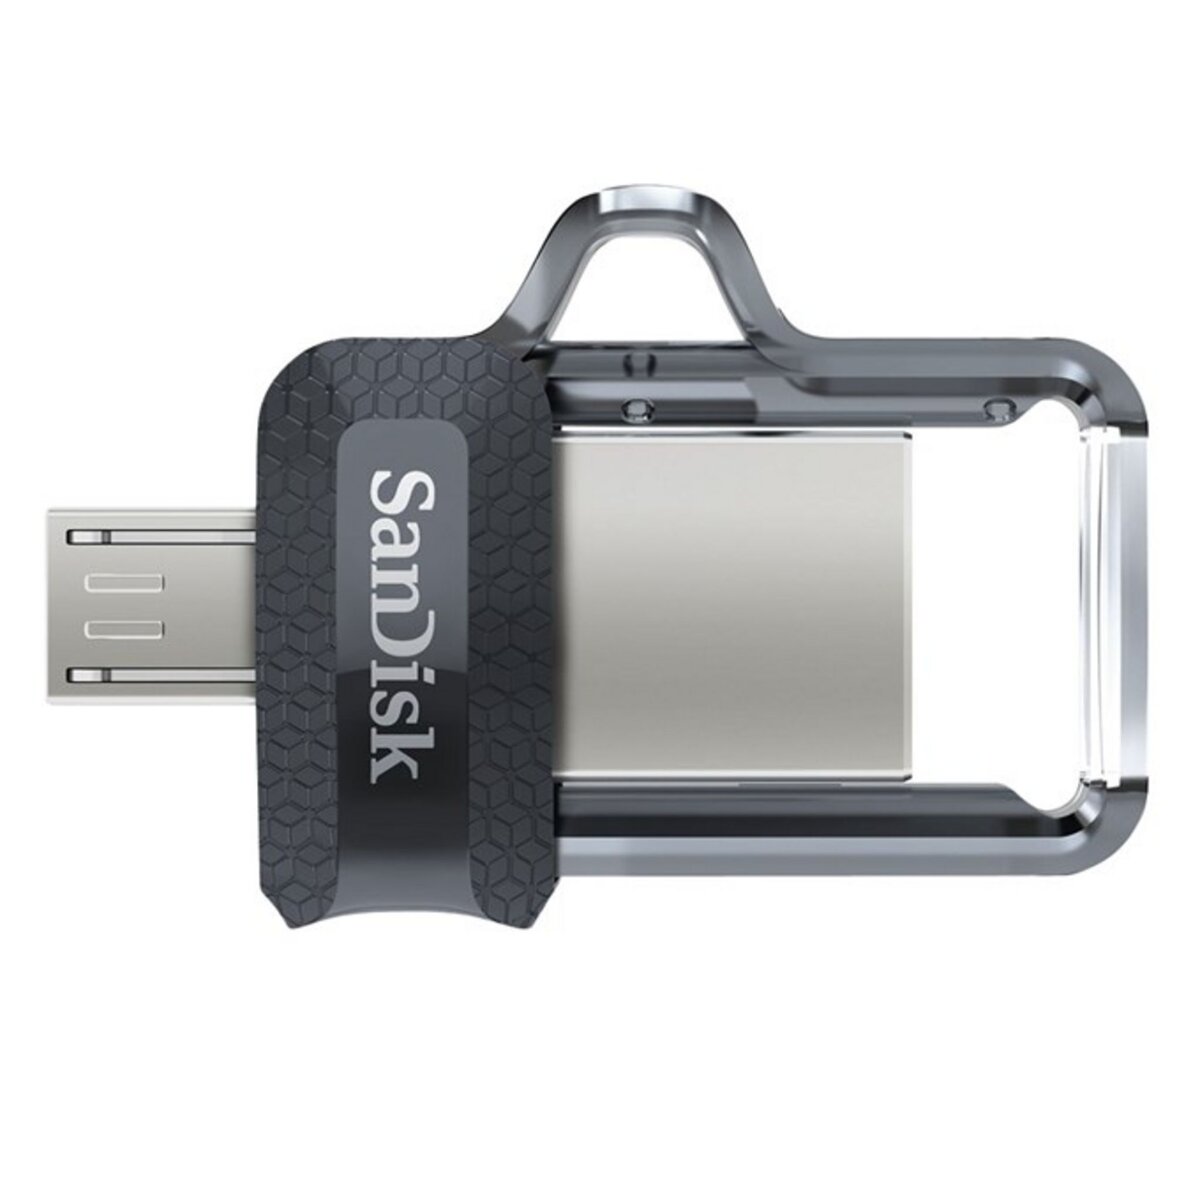 Clé USB SANDISK Clé USB 3.0 Ultra Fit 128Go Pas Cher 